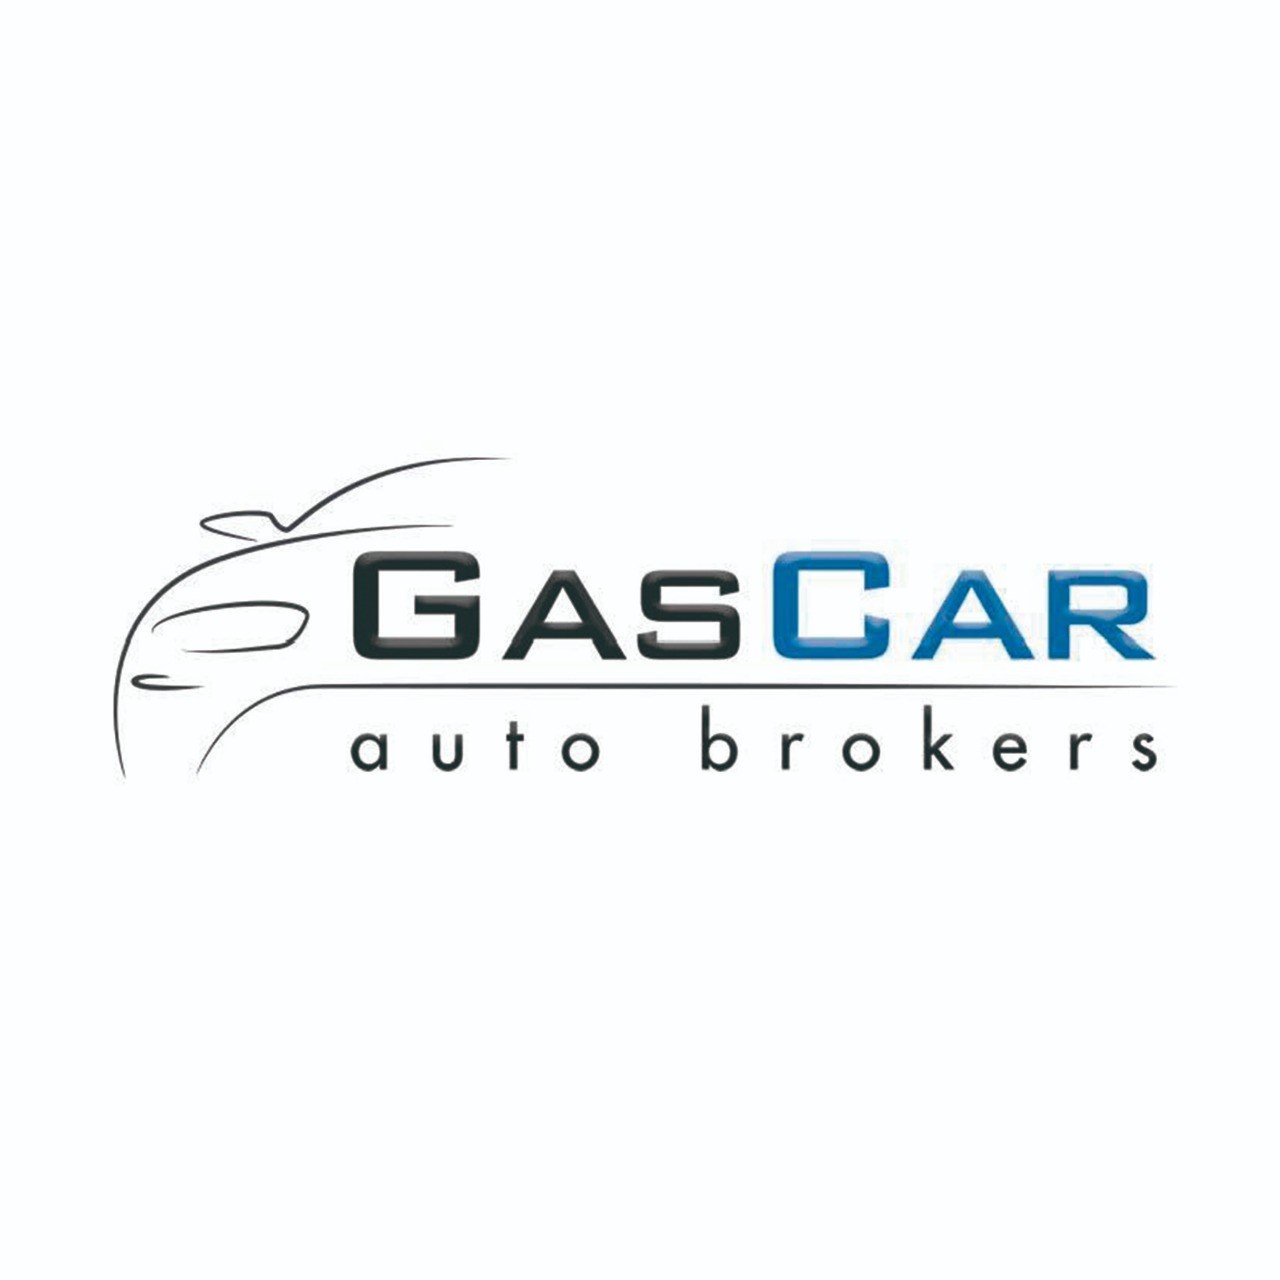 Gascar Auto Brokers